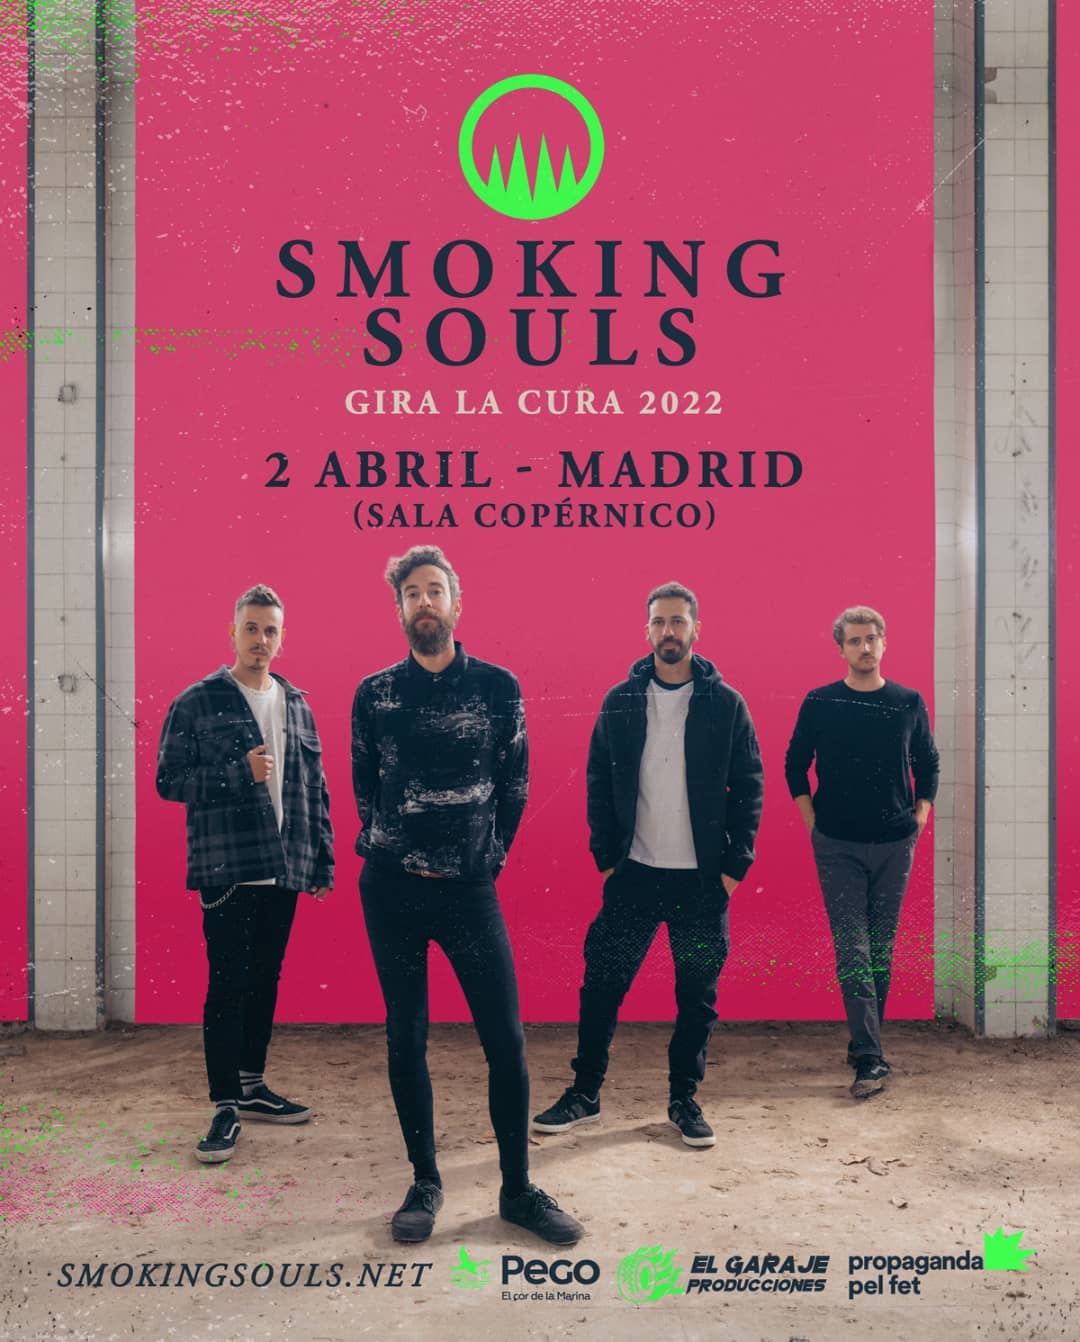 Smoking Souls estarán actuando en Madrid el 2 de abril